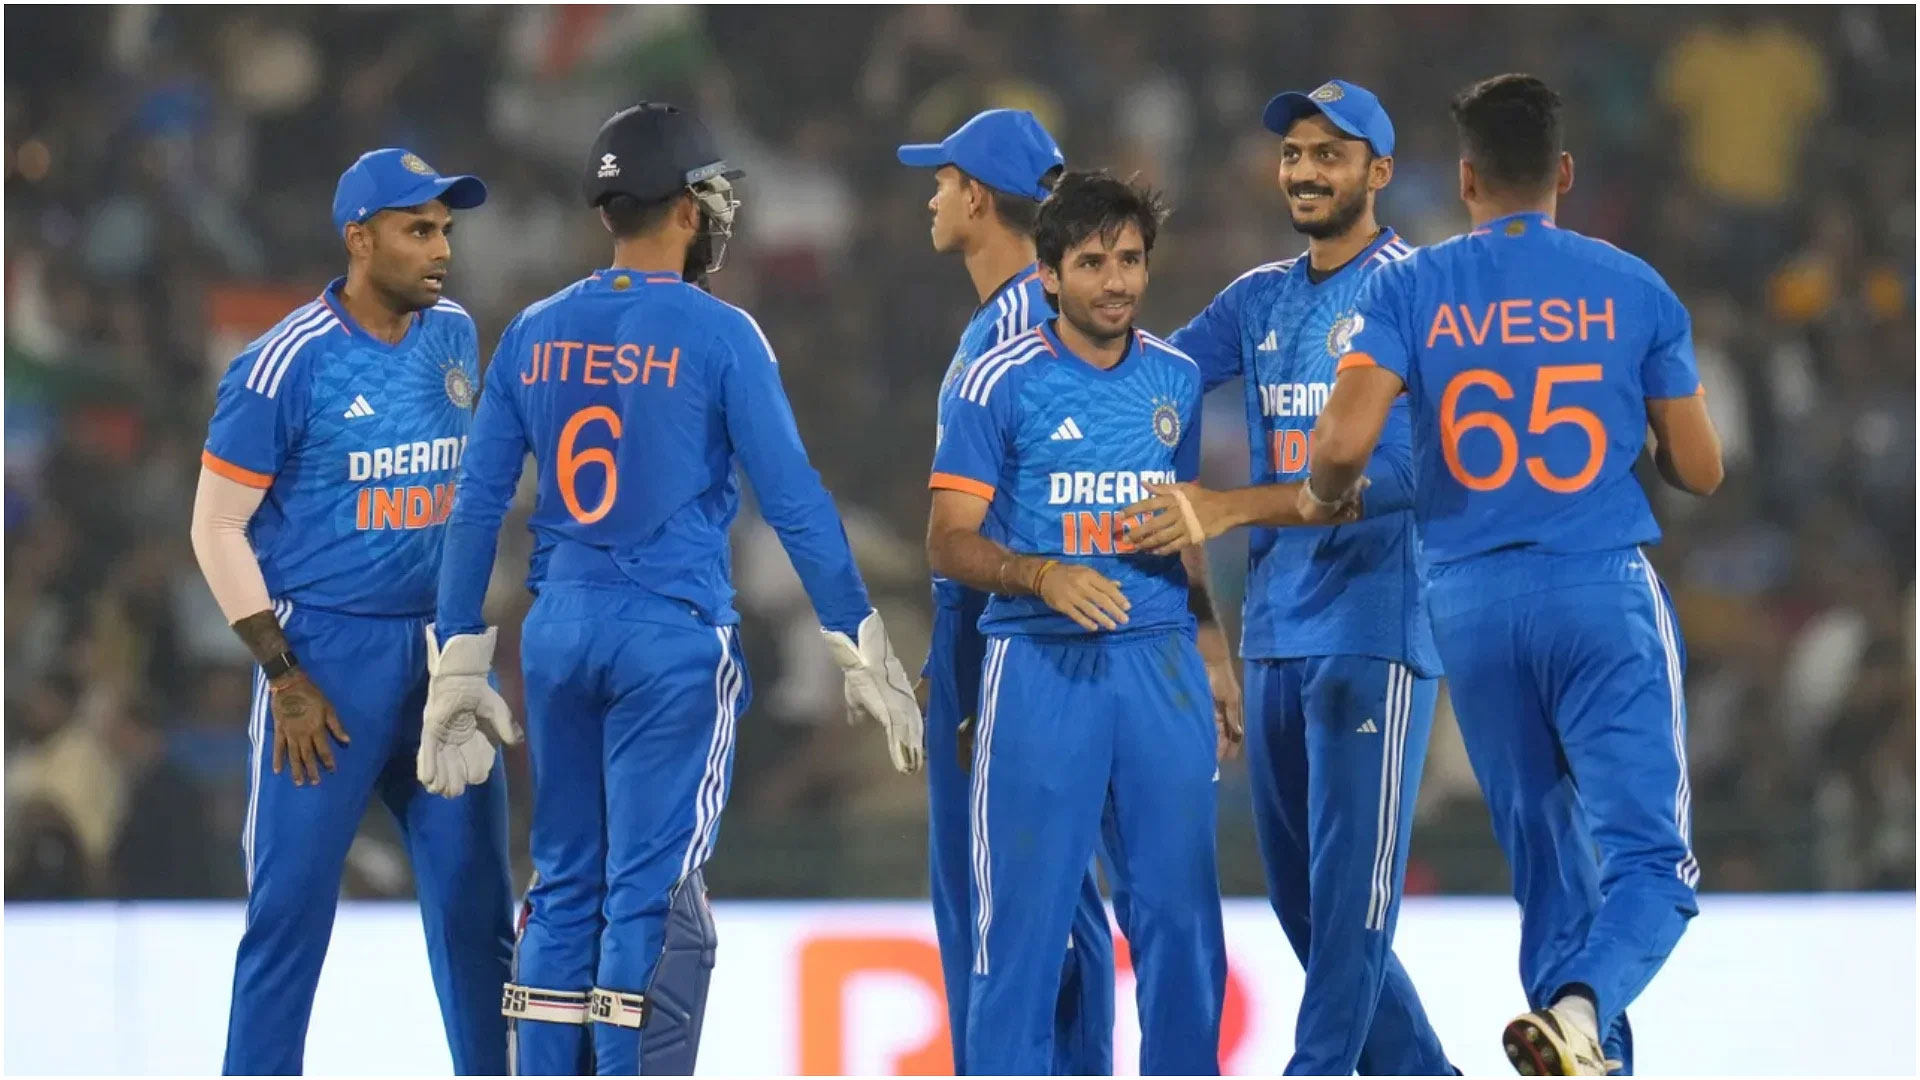 India vs Australia 4th T20 Match : भारत ने ऑस्ट्रेलिया को 20 रनों से हराकर श्रृंखला में बनायी अजेय बढ़त